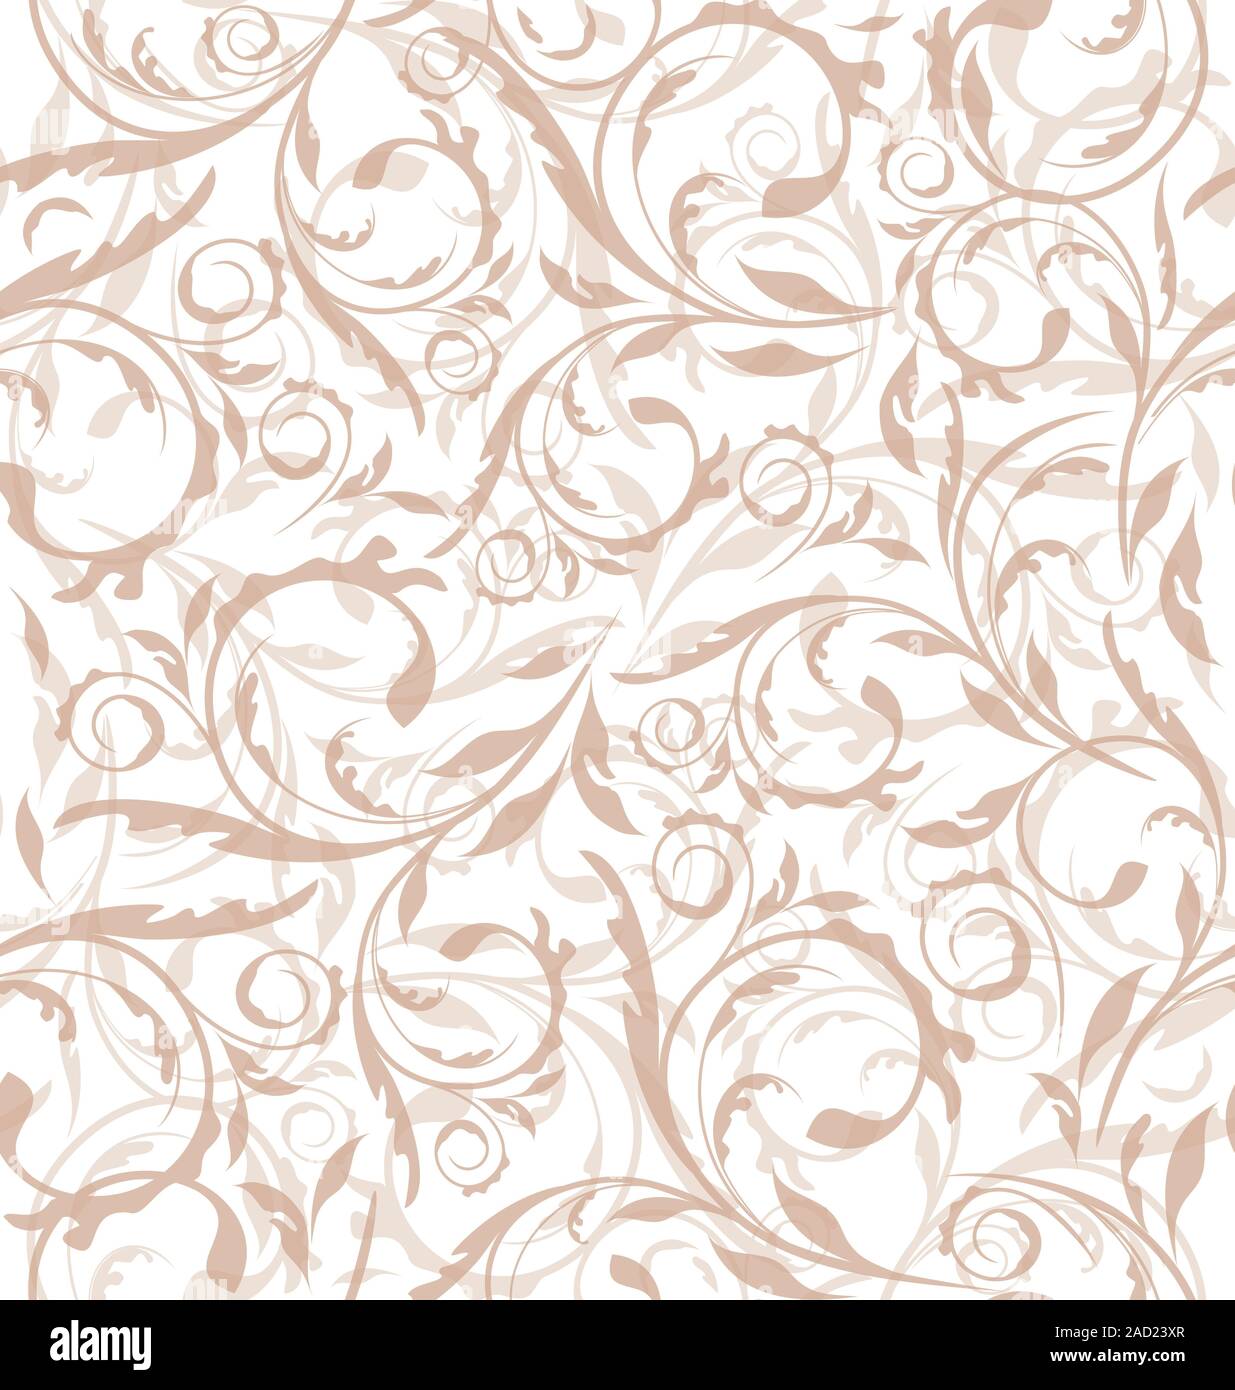 Ausgezeichnete nahtlose floral background, Muster für die kontinuierliche Replikation Stockfoto